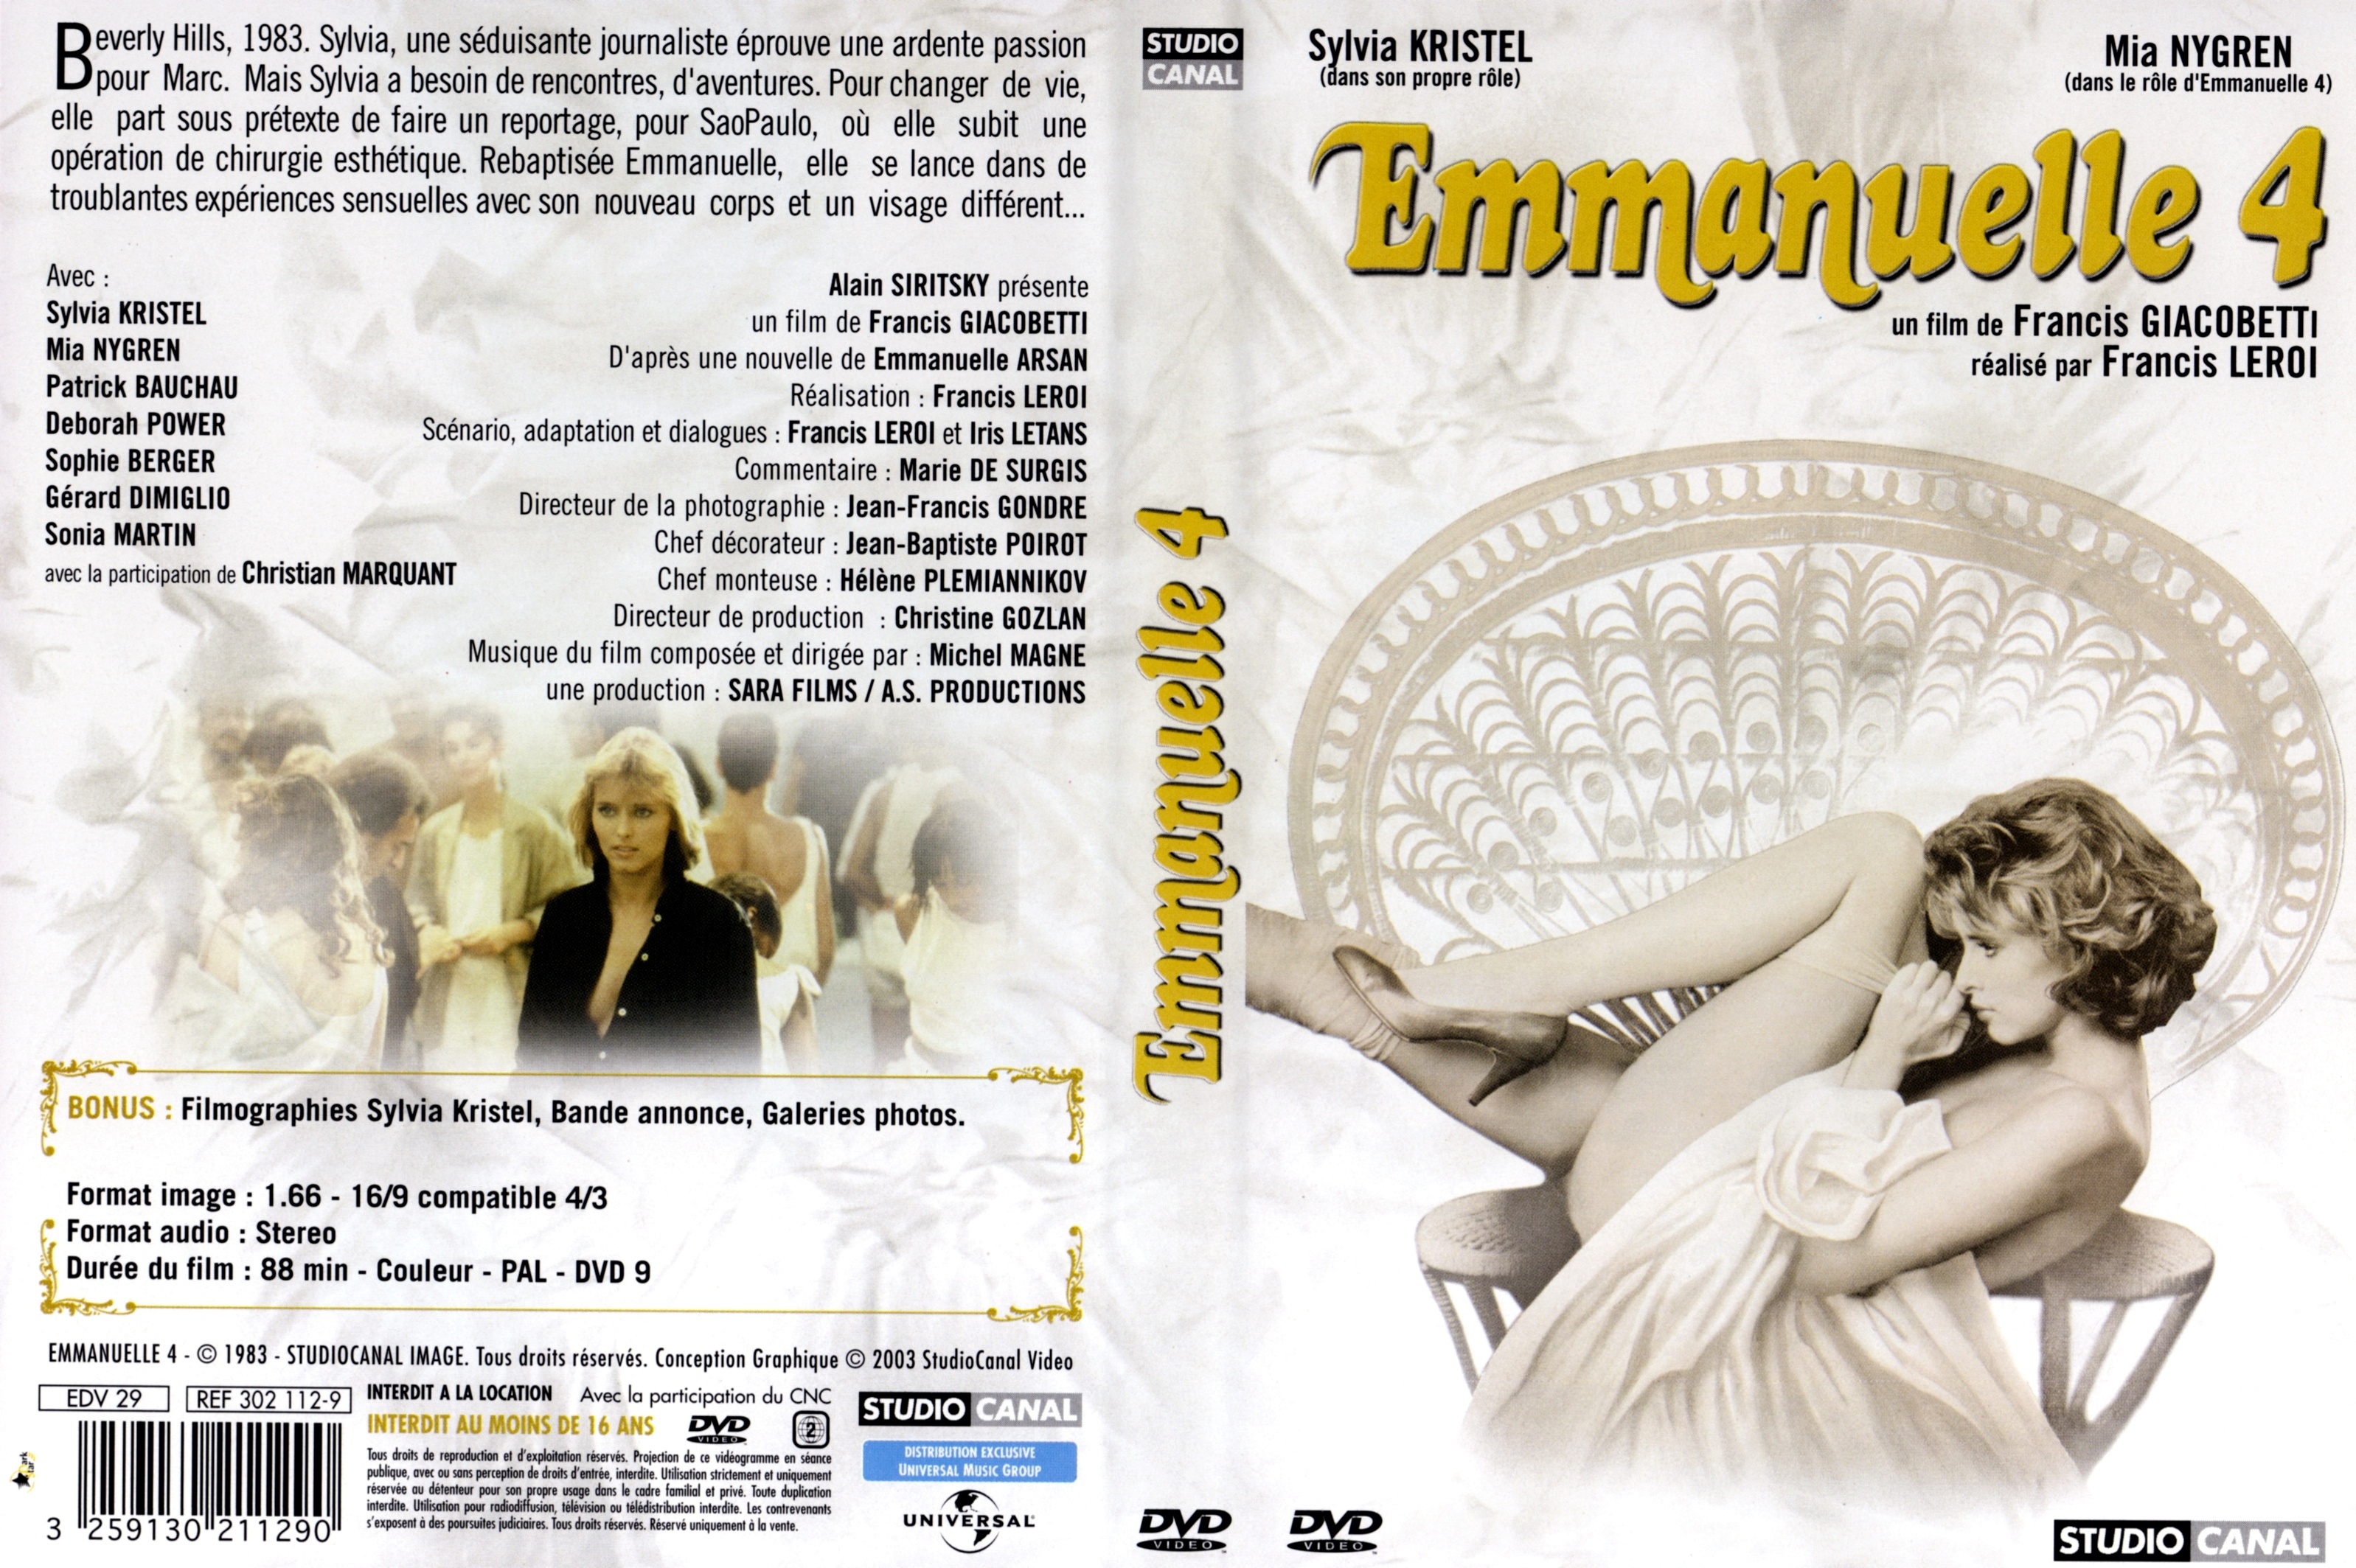 Jaquette DVD Emmanuelle 4